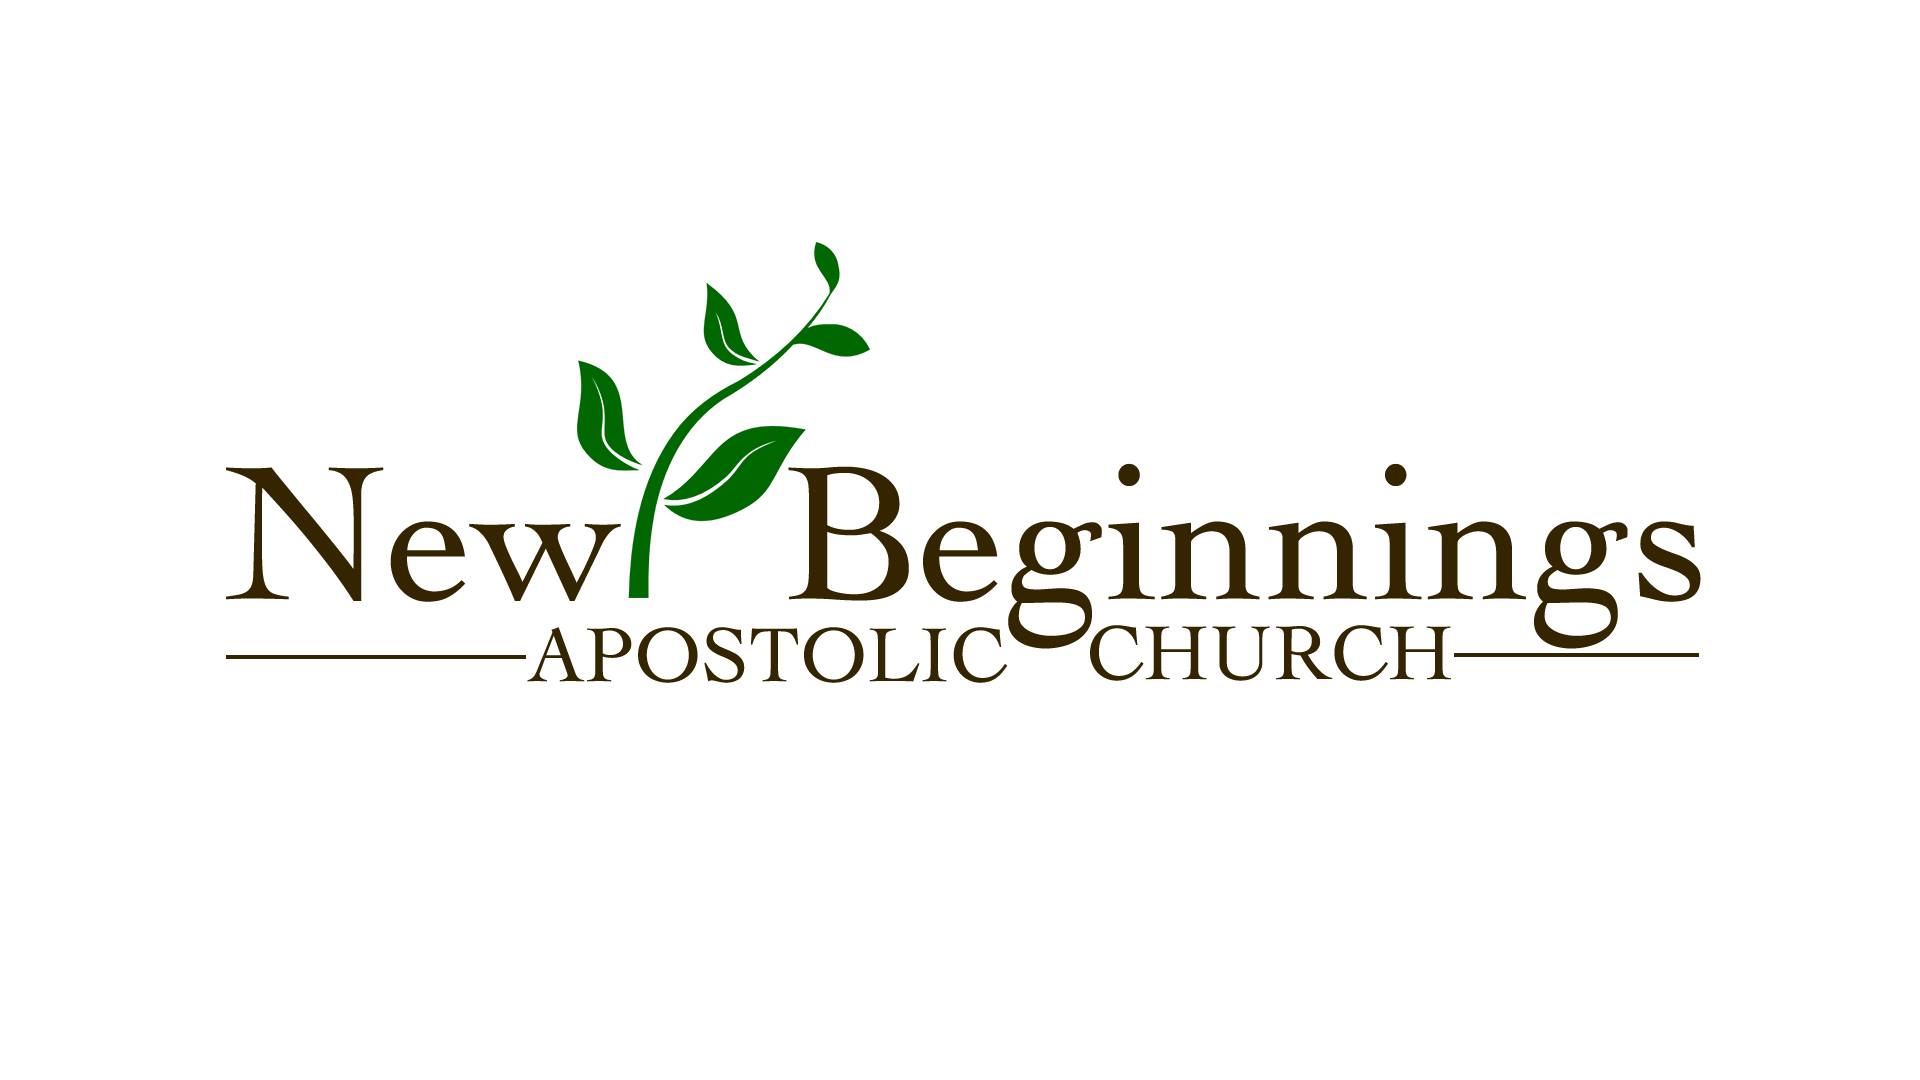 New Beginnings Apostolic Church